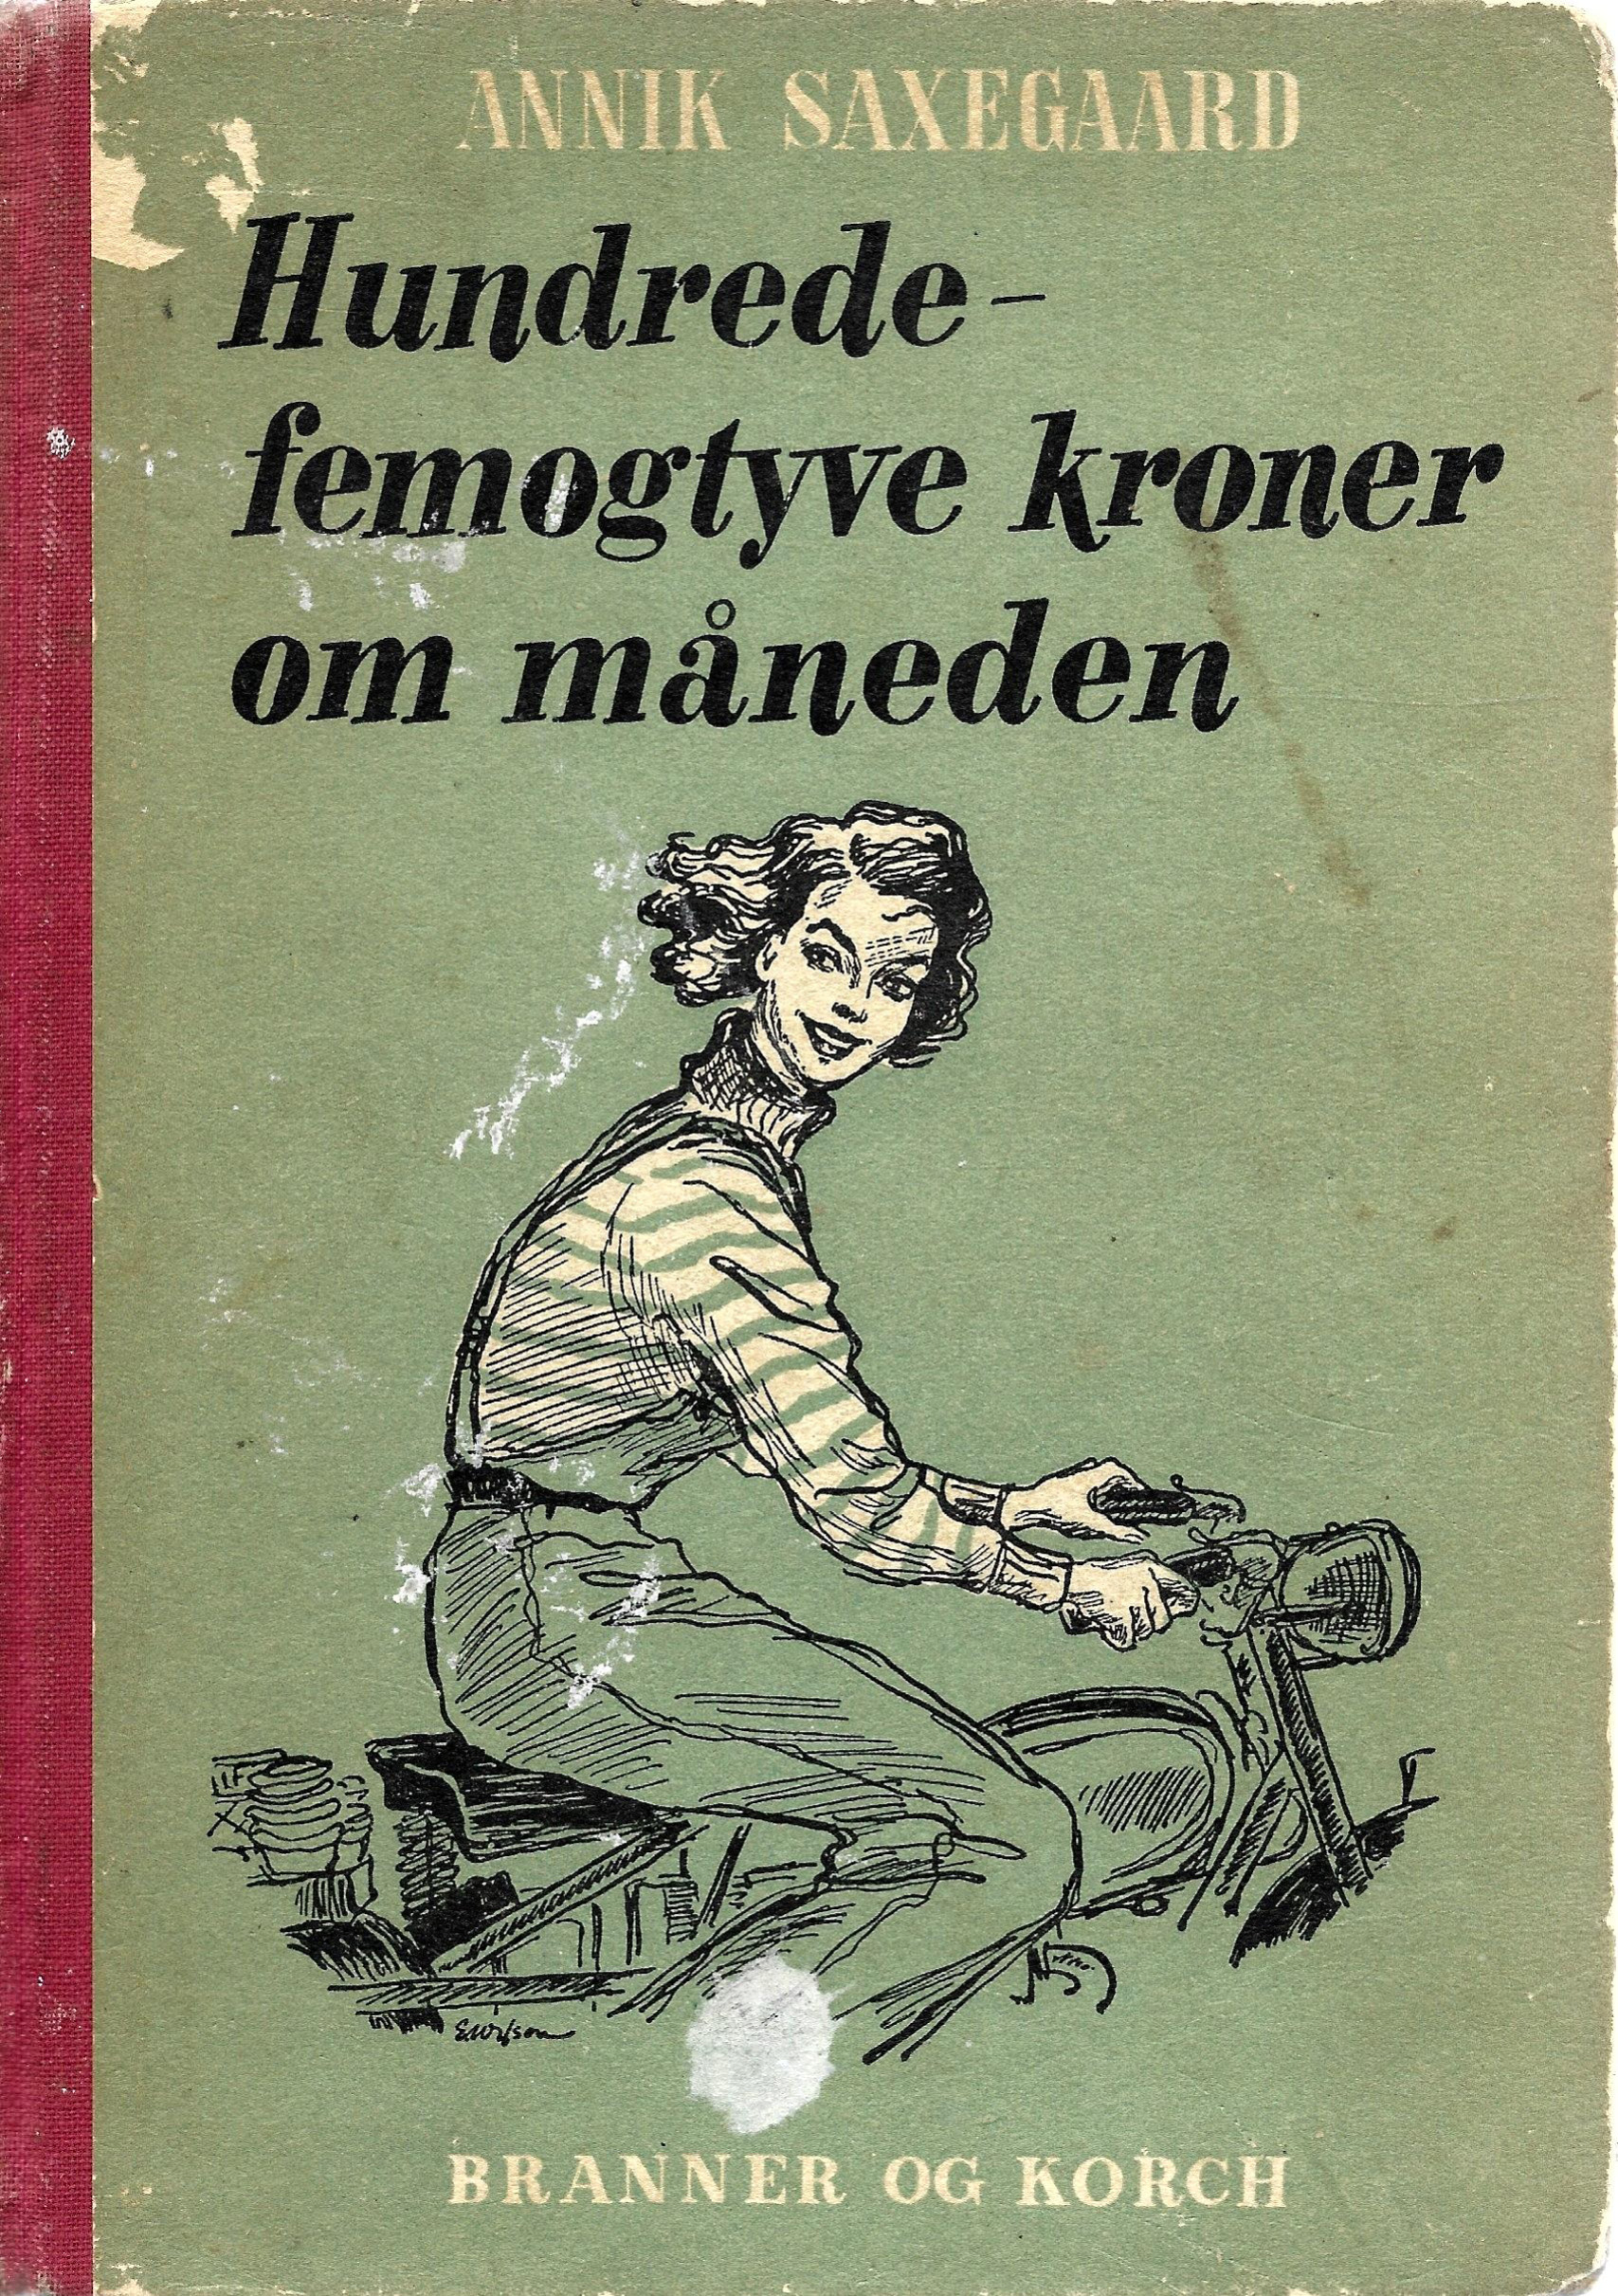 Hundredfe-femogtyve kroner om måneden - Annik Saxegaard 1950-1